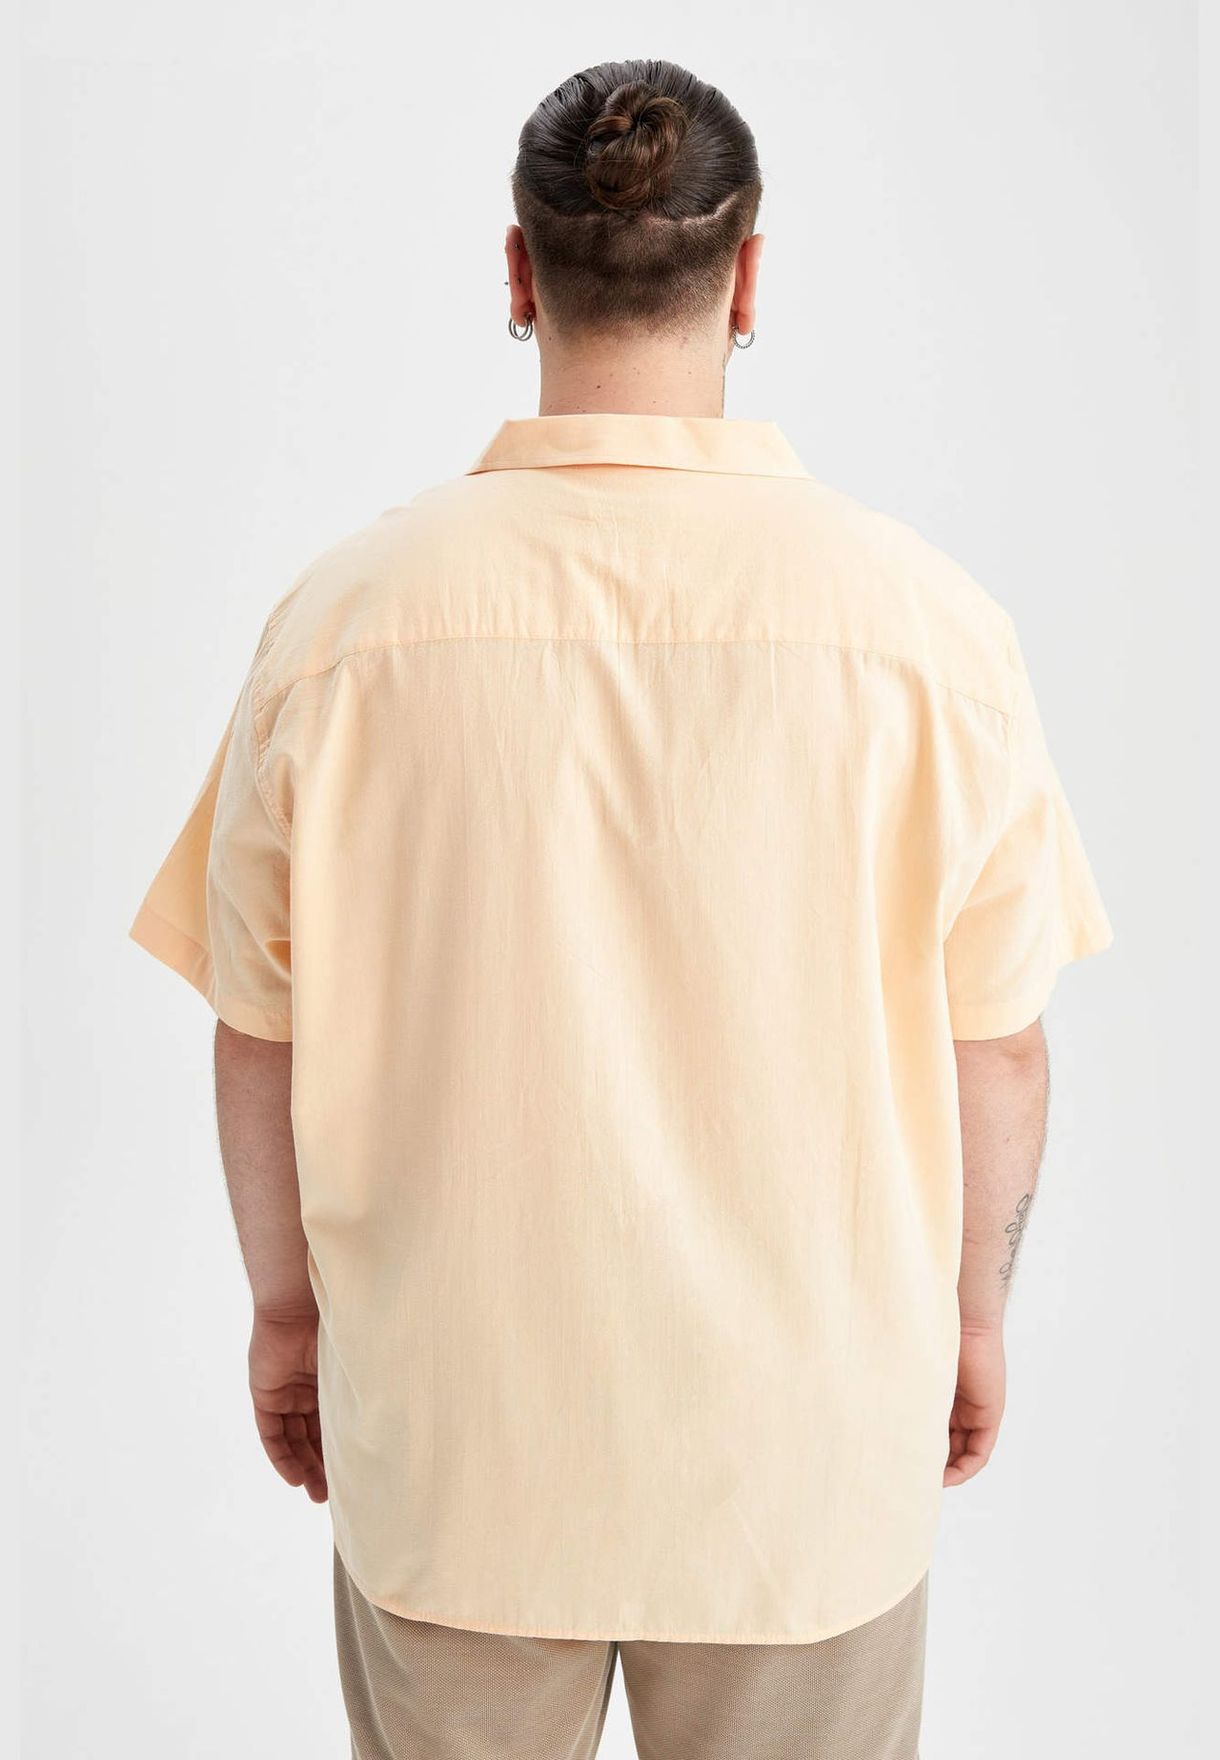 Man Plussize Fit Resort Neck Woven Top Short Sleeve Shirt